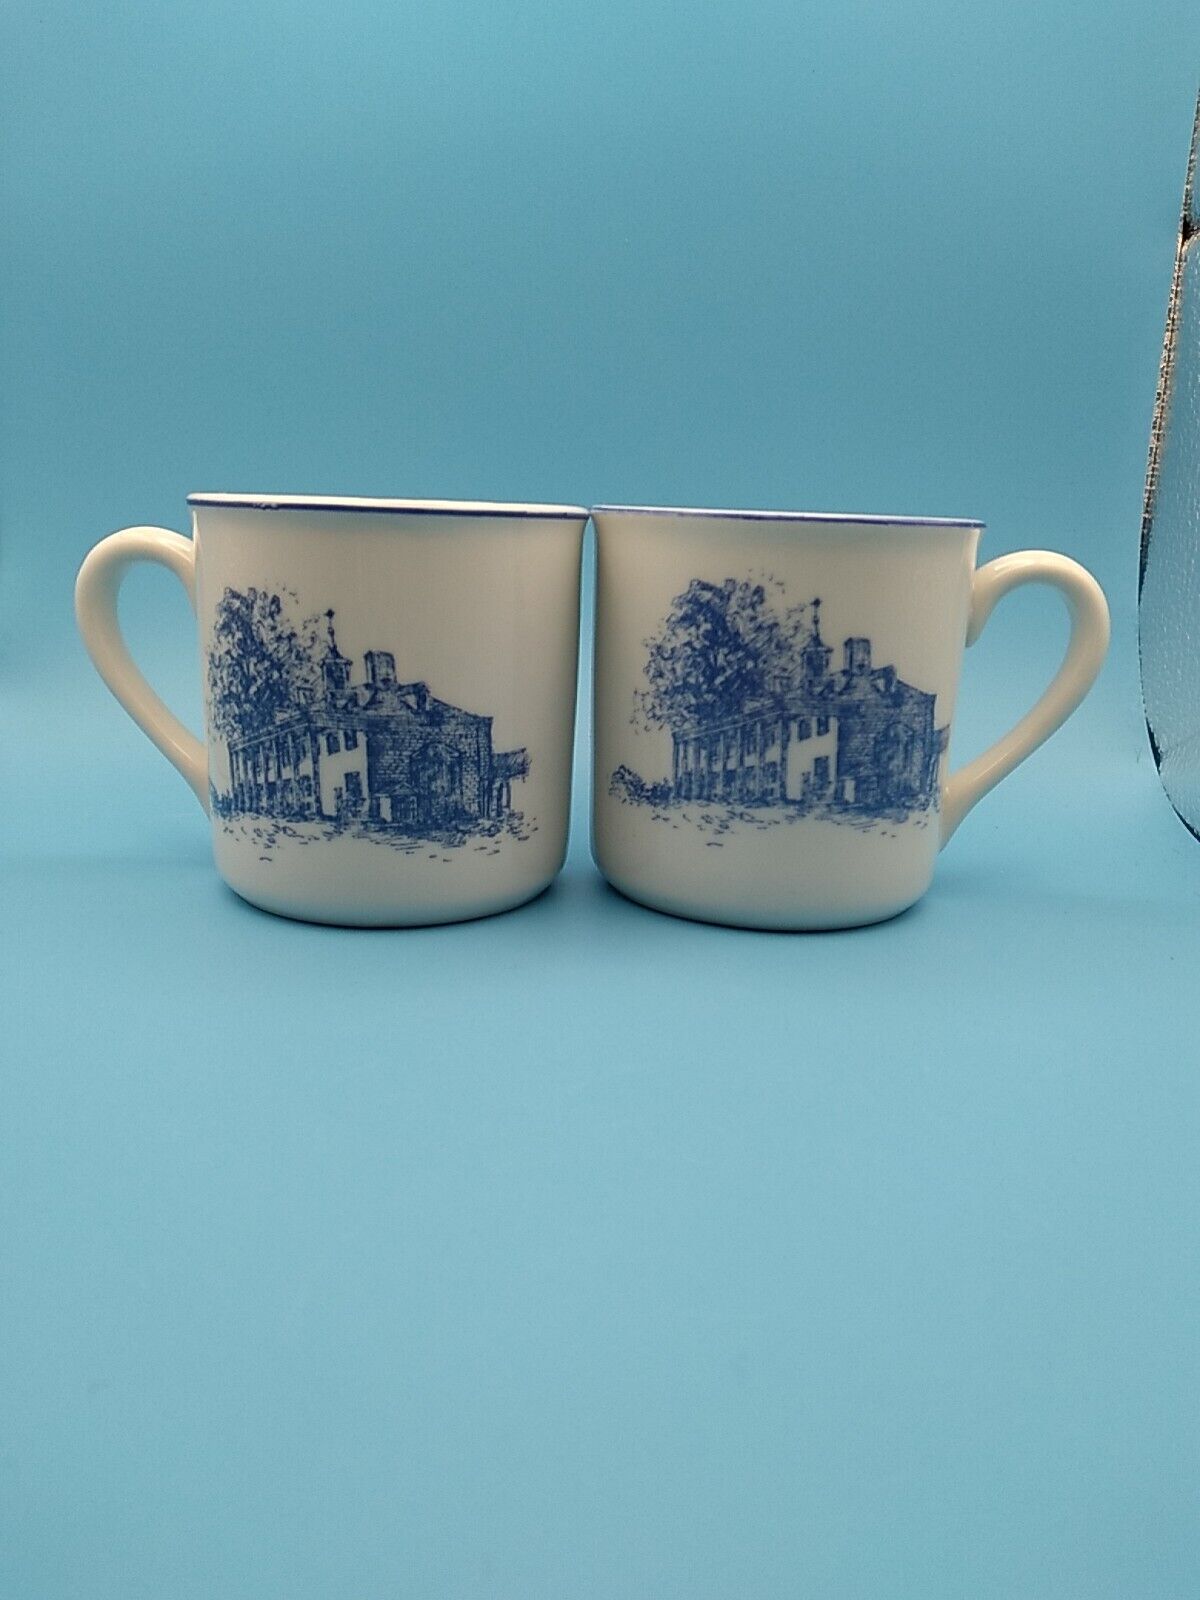 Vintage Leart  Brazil And Schmidt Brasil Blue White Mug Cups Set Of 2